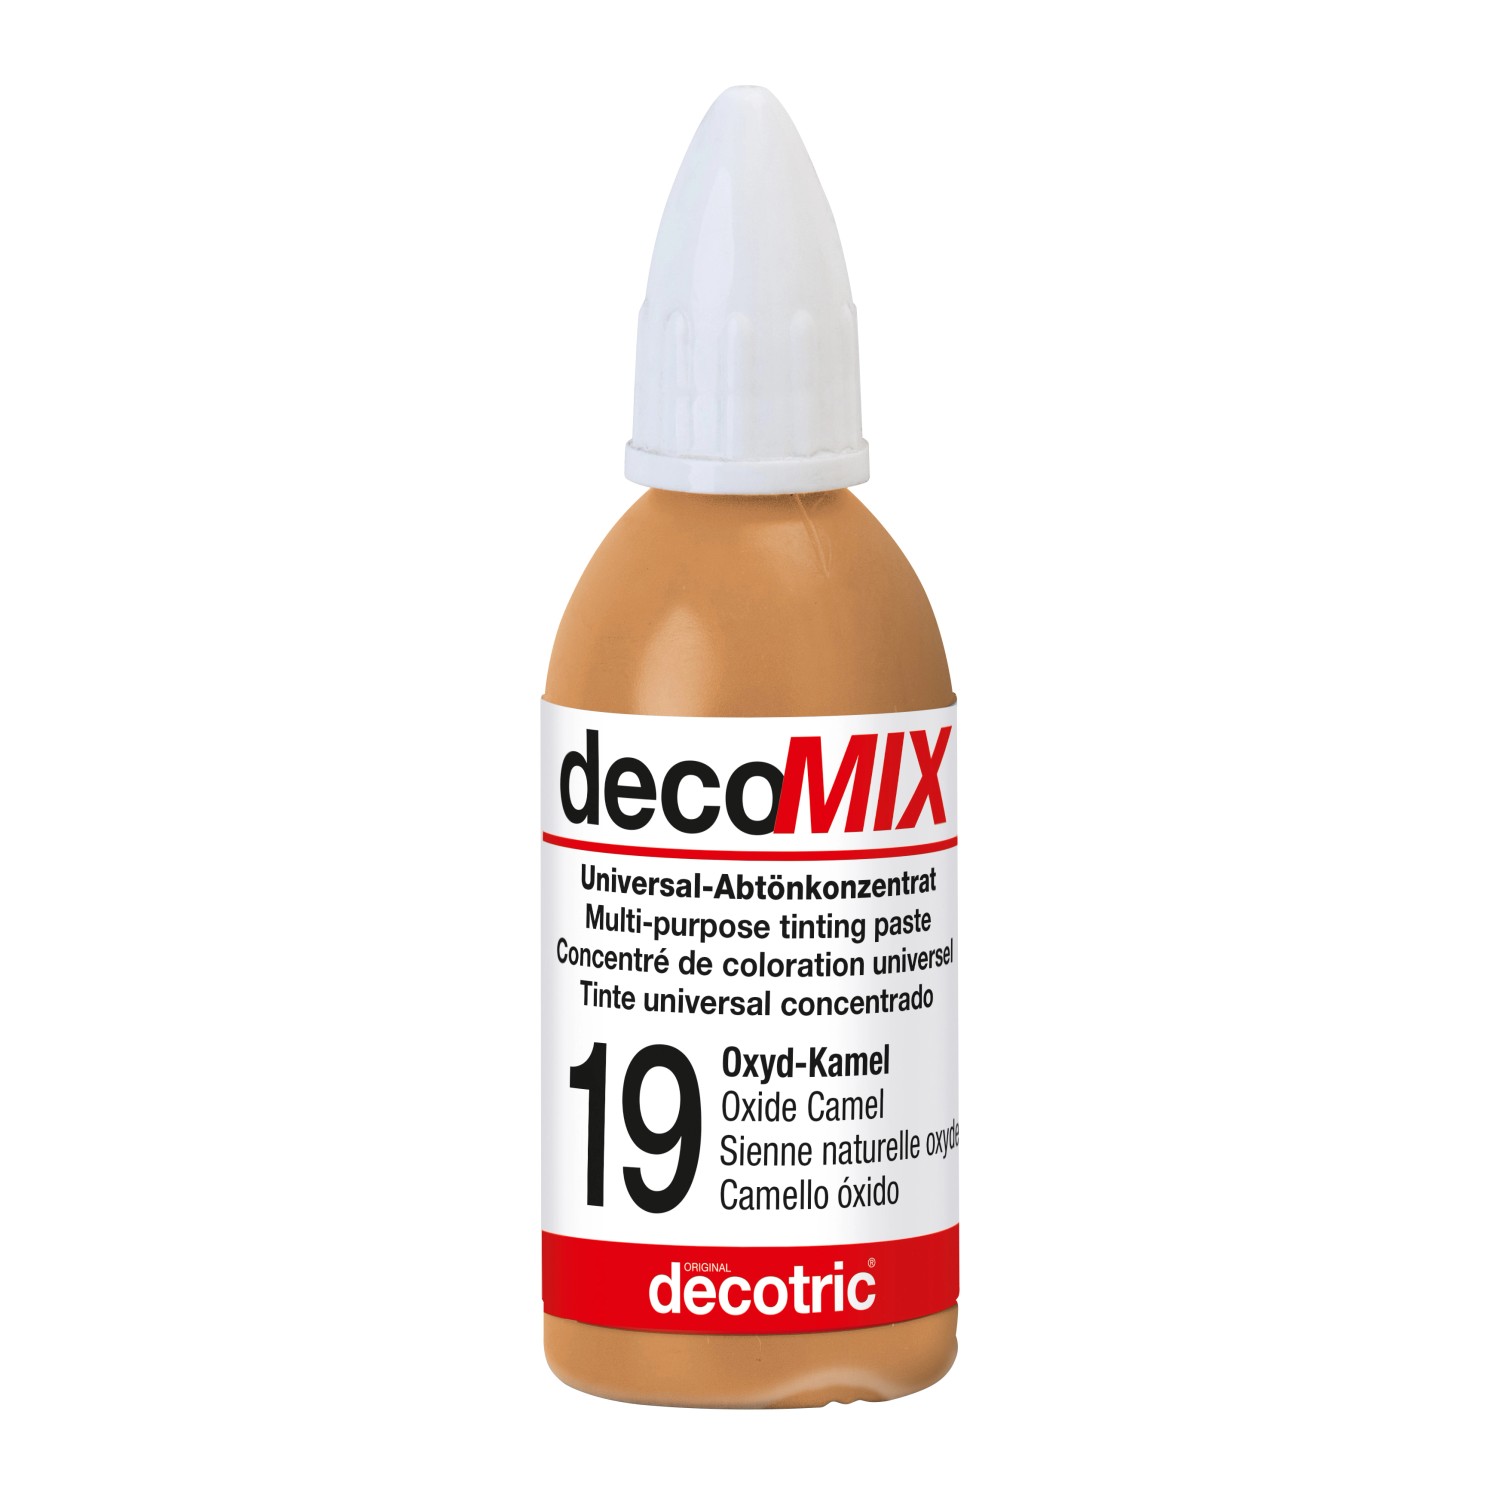 Decomix Universal-Abtönkonzentrat Oxyd-Kamel 20 ml von decotric